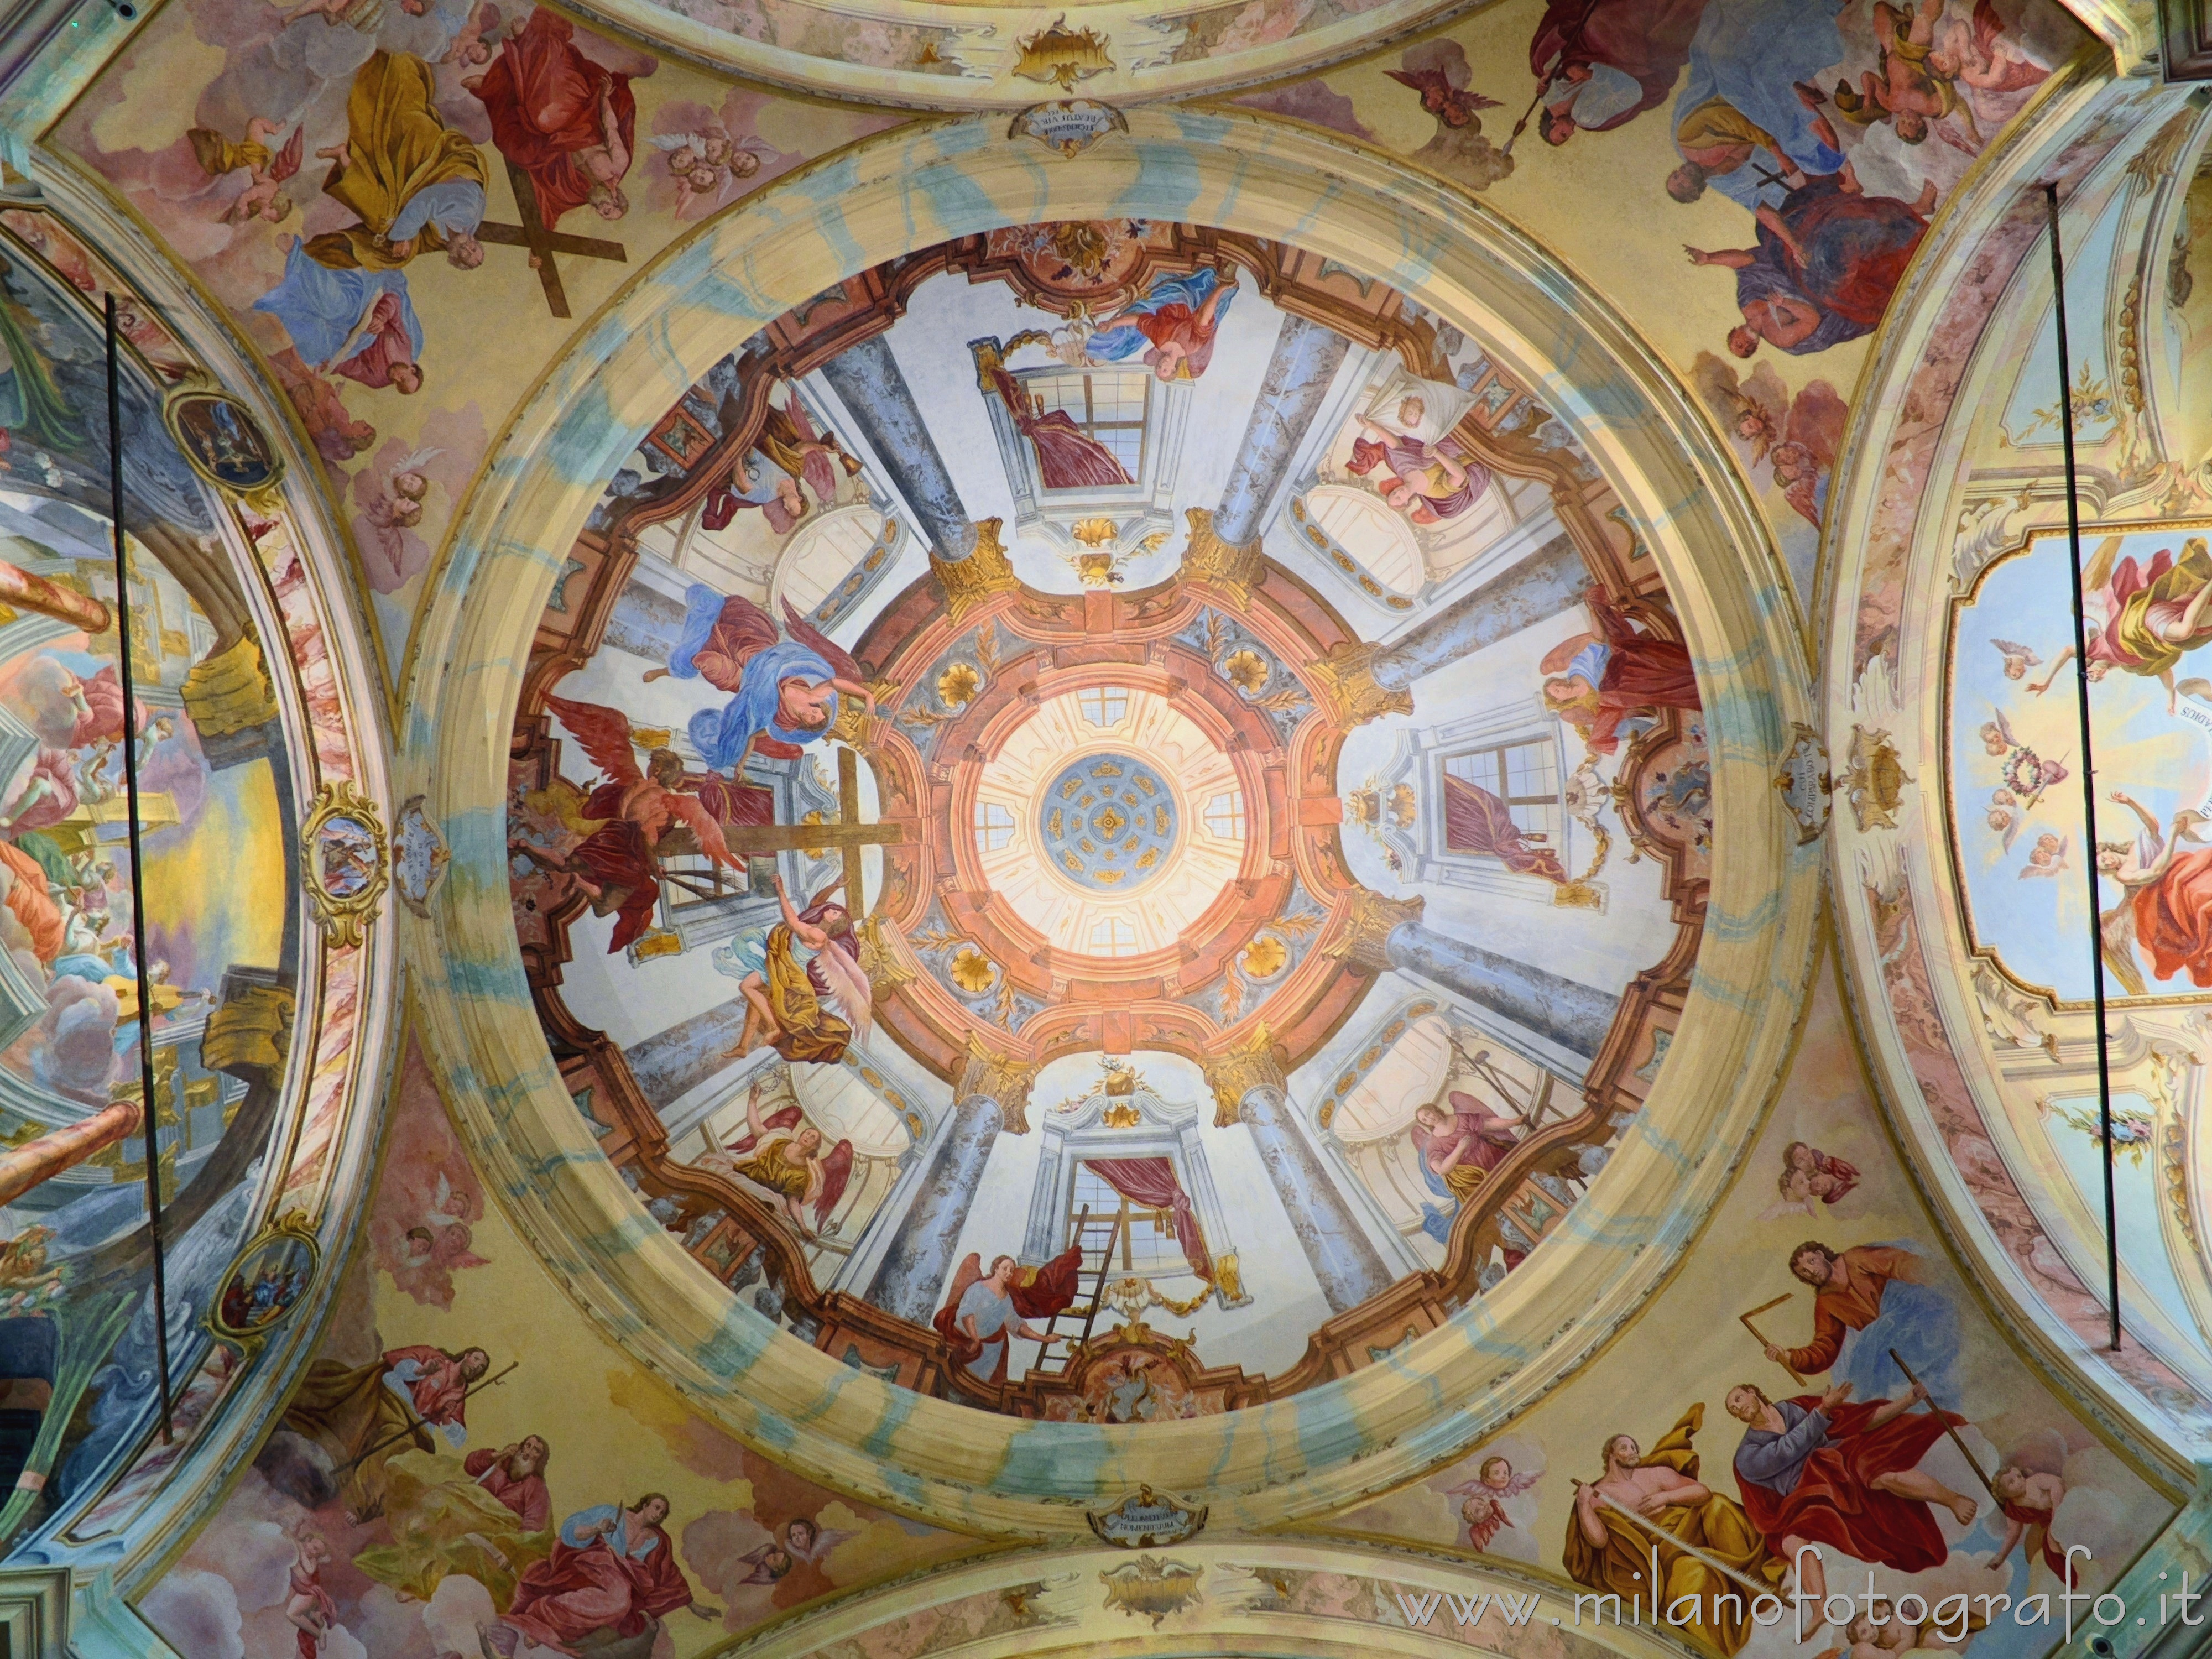 Madonna del Sasso (Verbano-Cusio-Ossola): Affreschi all'interno della cupola del Santuario della Madonna del Sasso - Madonna del Sasso (Verbano-Cusio-Ossola)